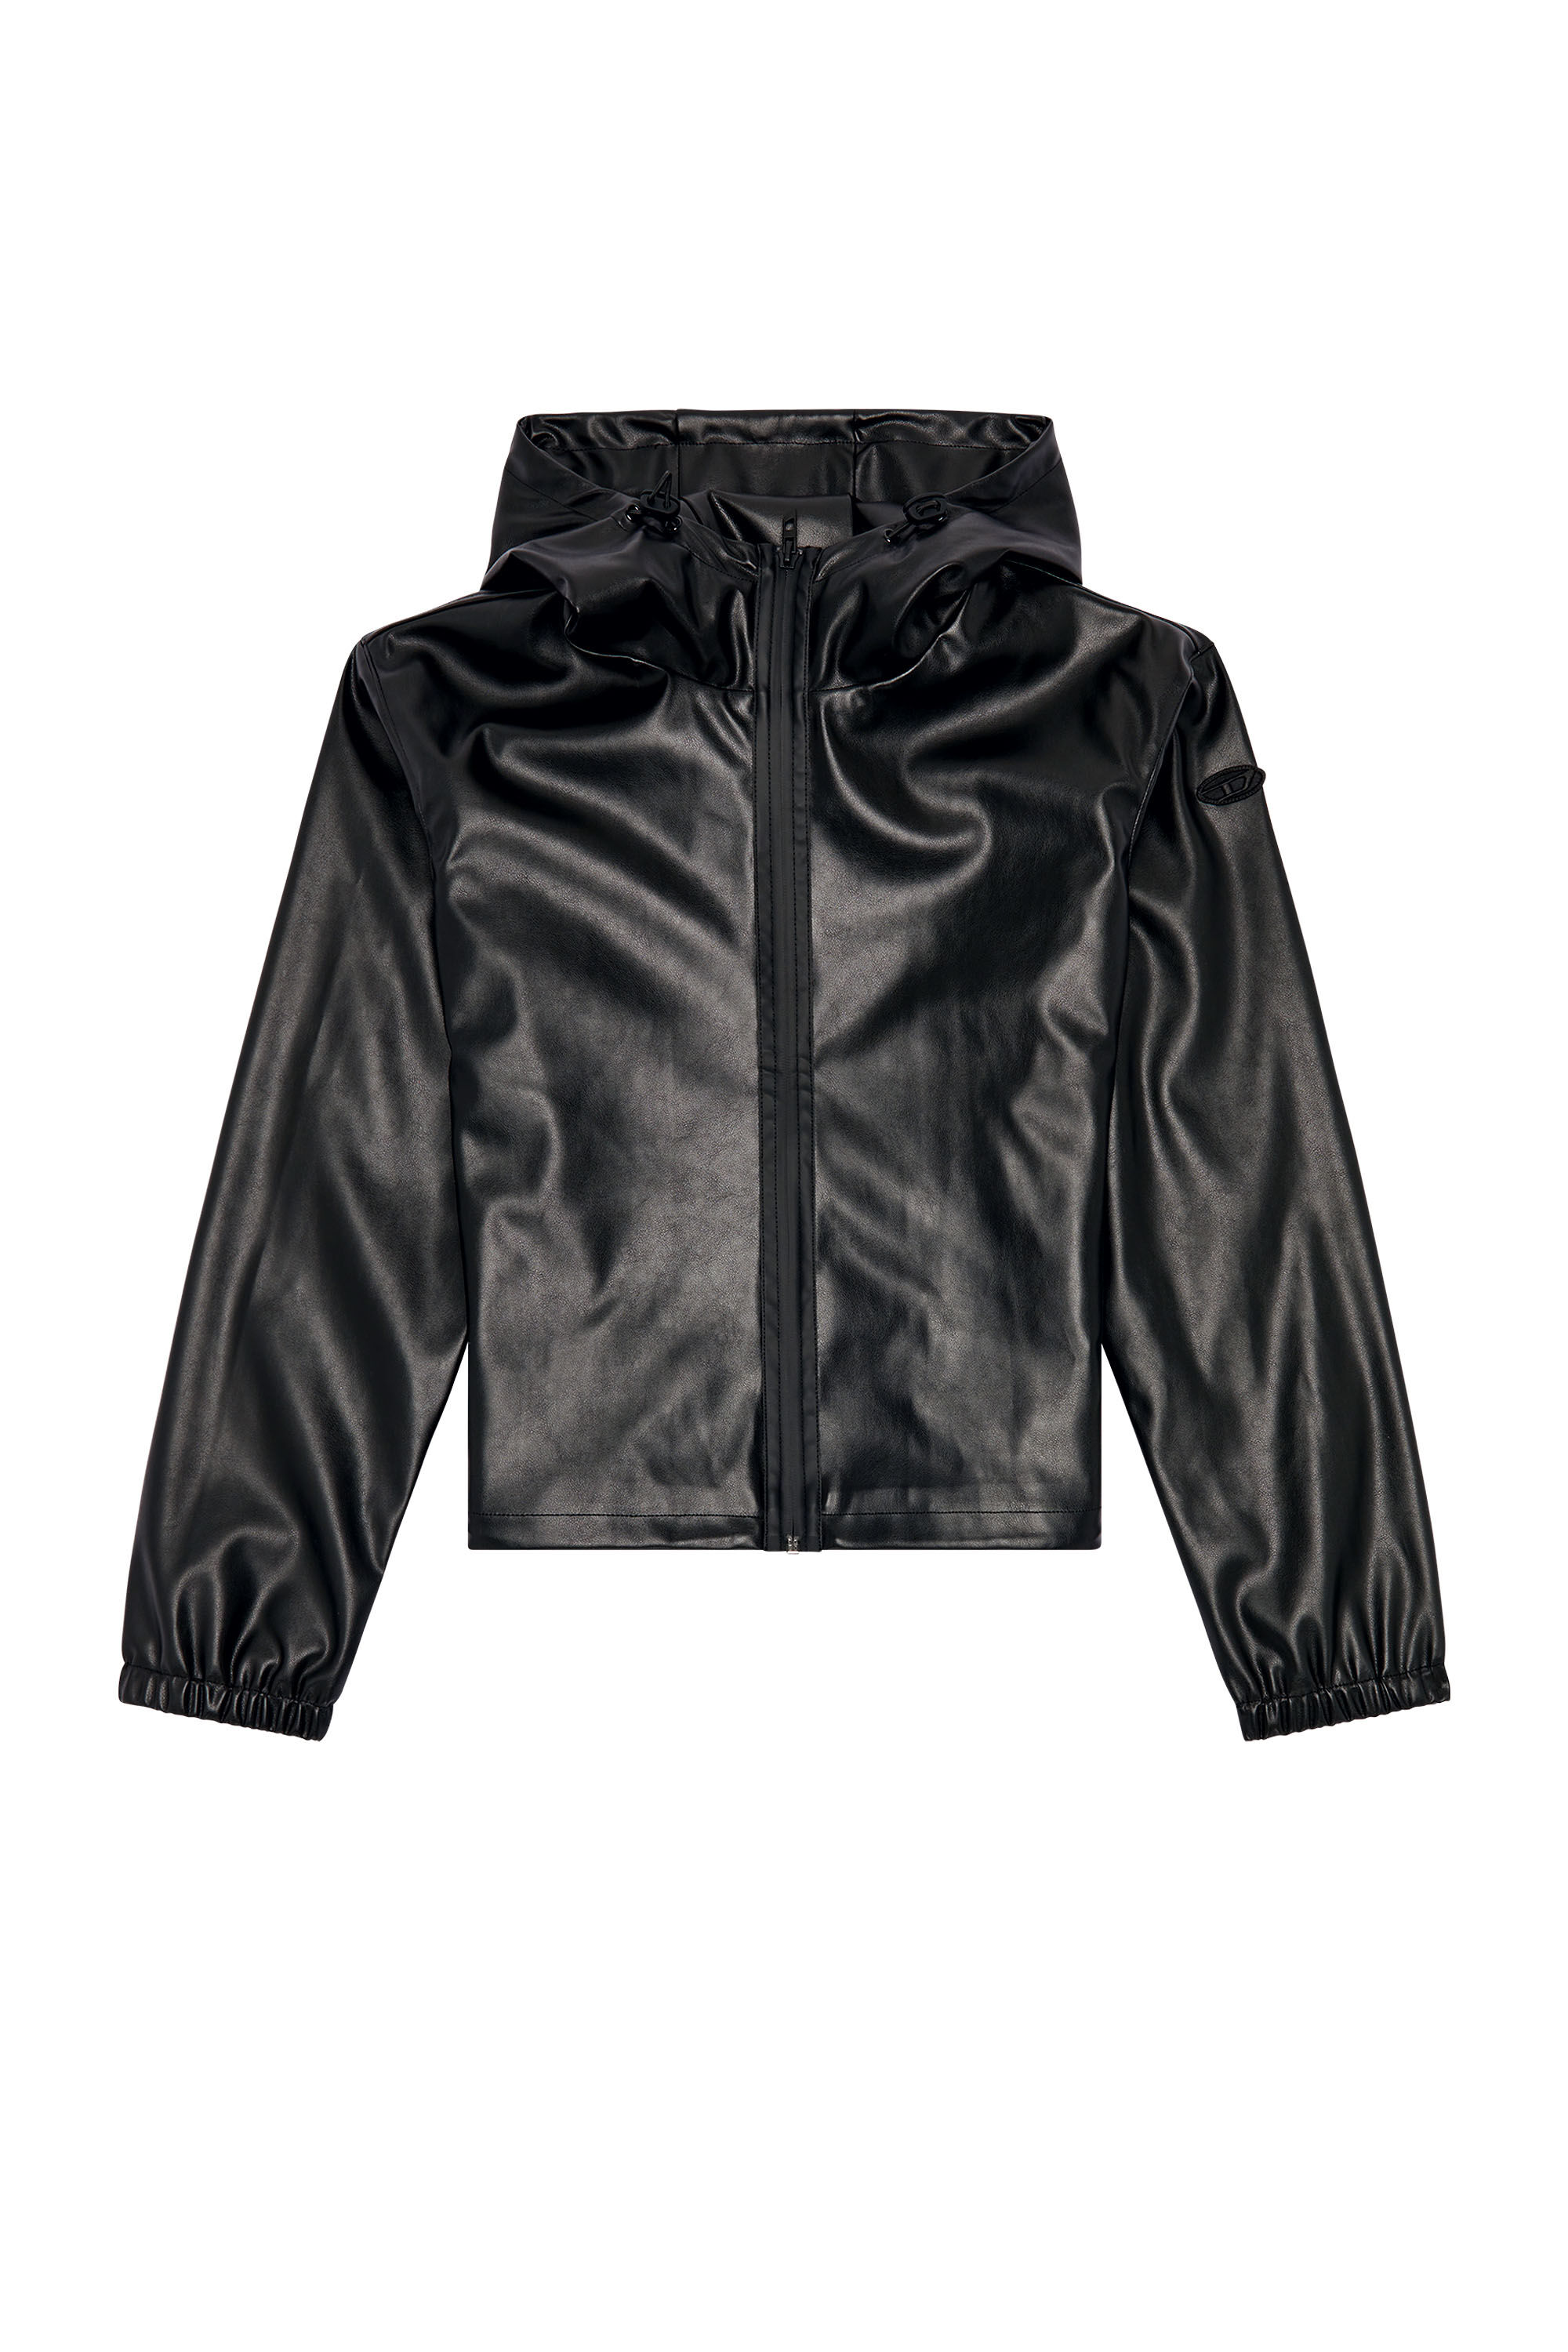 Diesel - G-BONNY-N1, Woman Hooded jacket in coated fabric in Black - Image 2